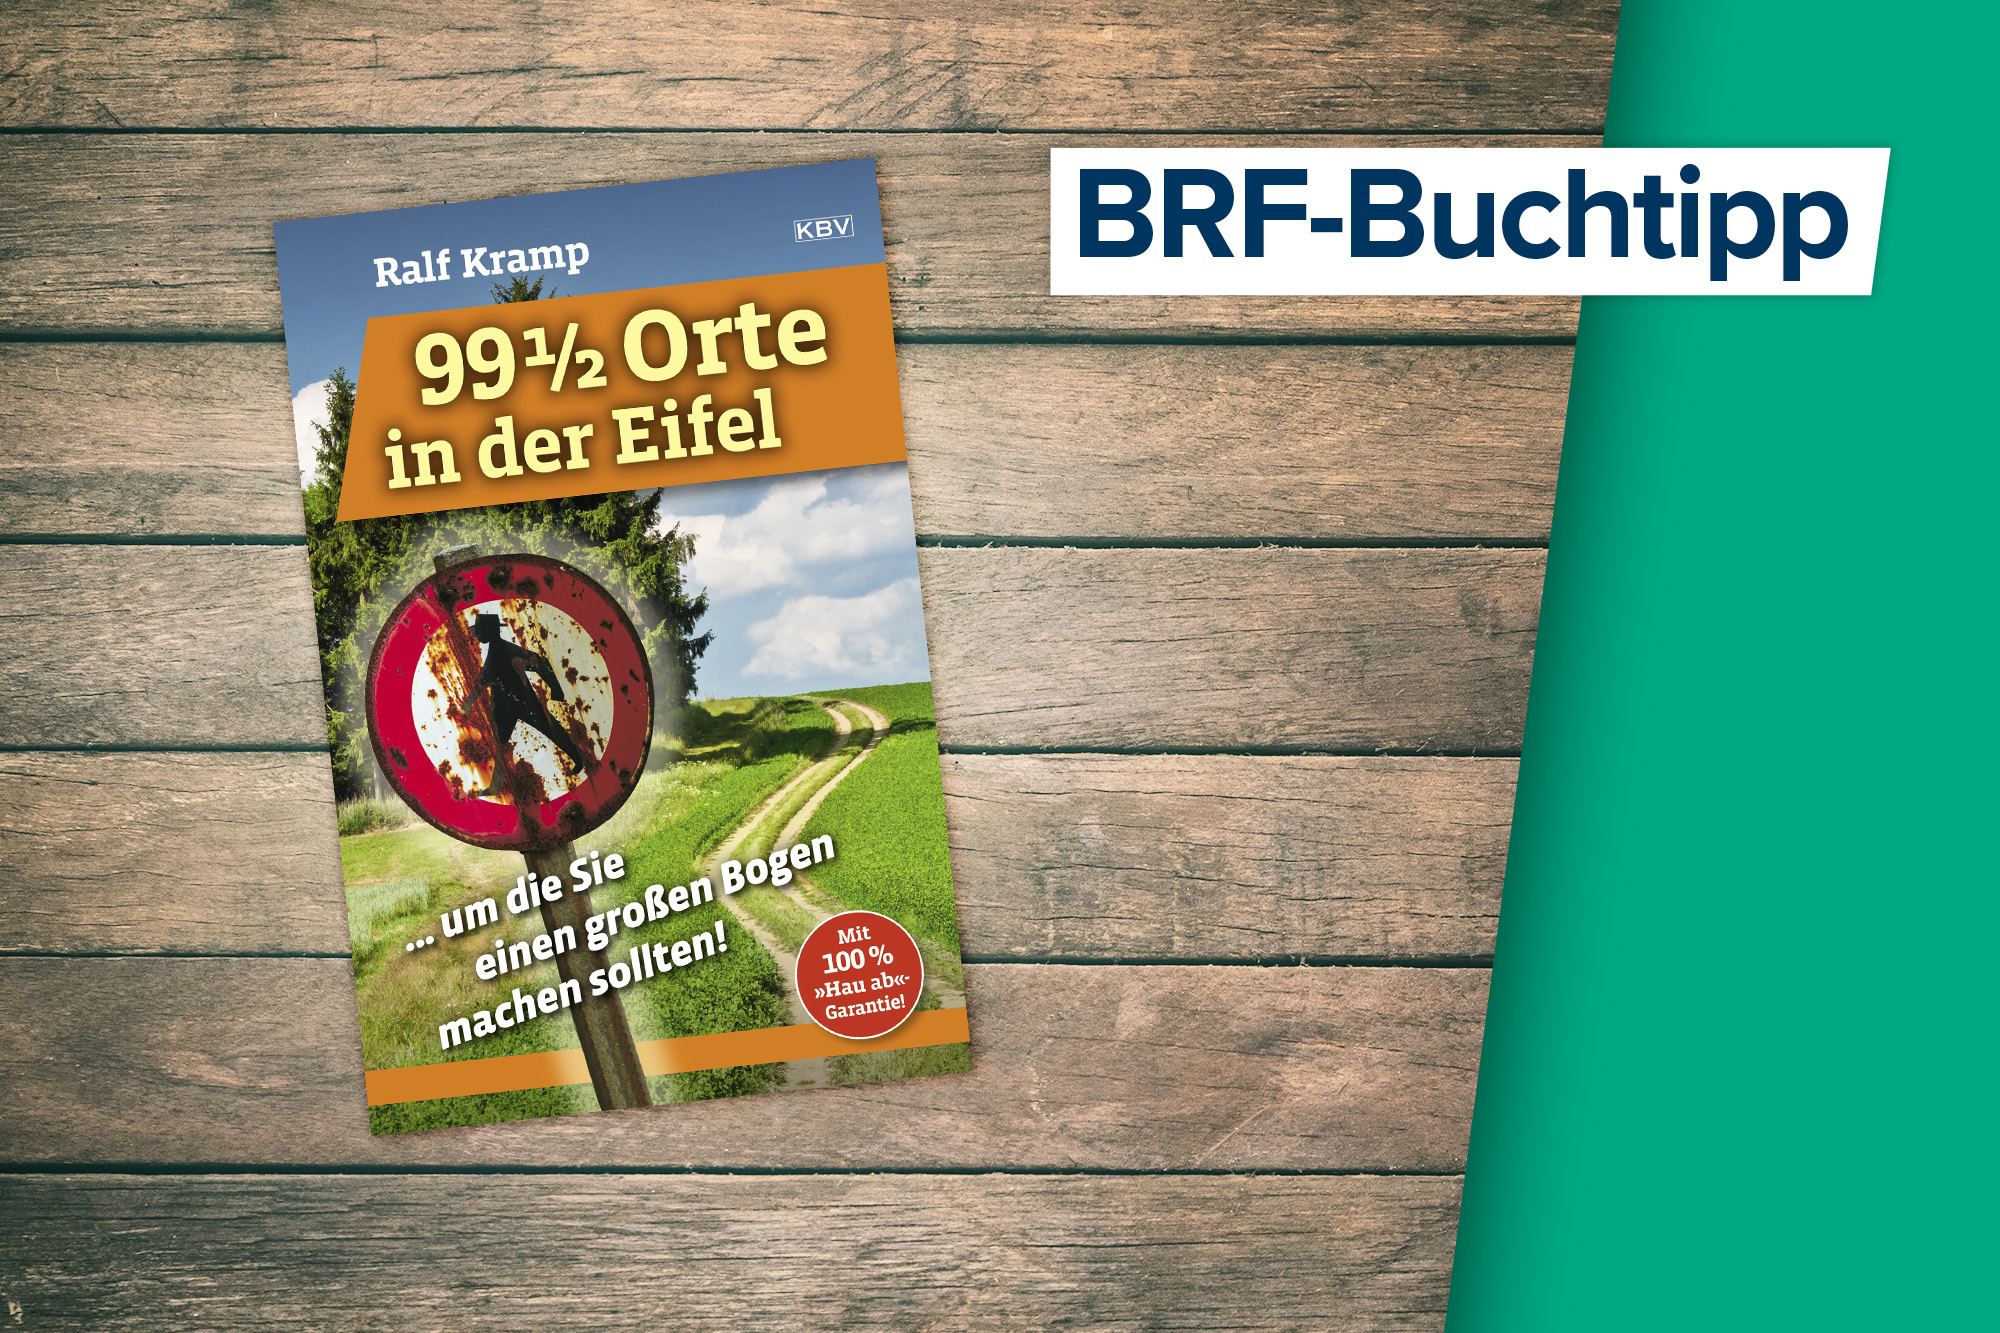 Der Buchtipp auf BRF1: "99 1/2 Orte in der Eifel" von Ralf Kramp (KBV Verlag)